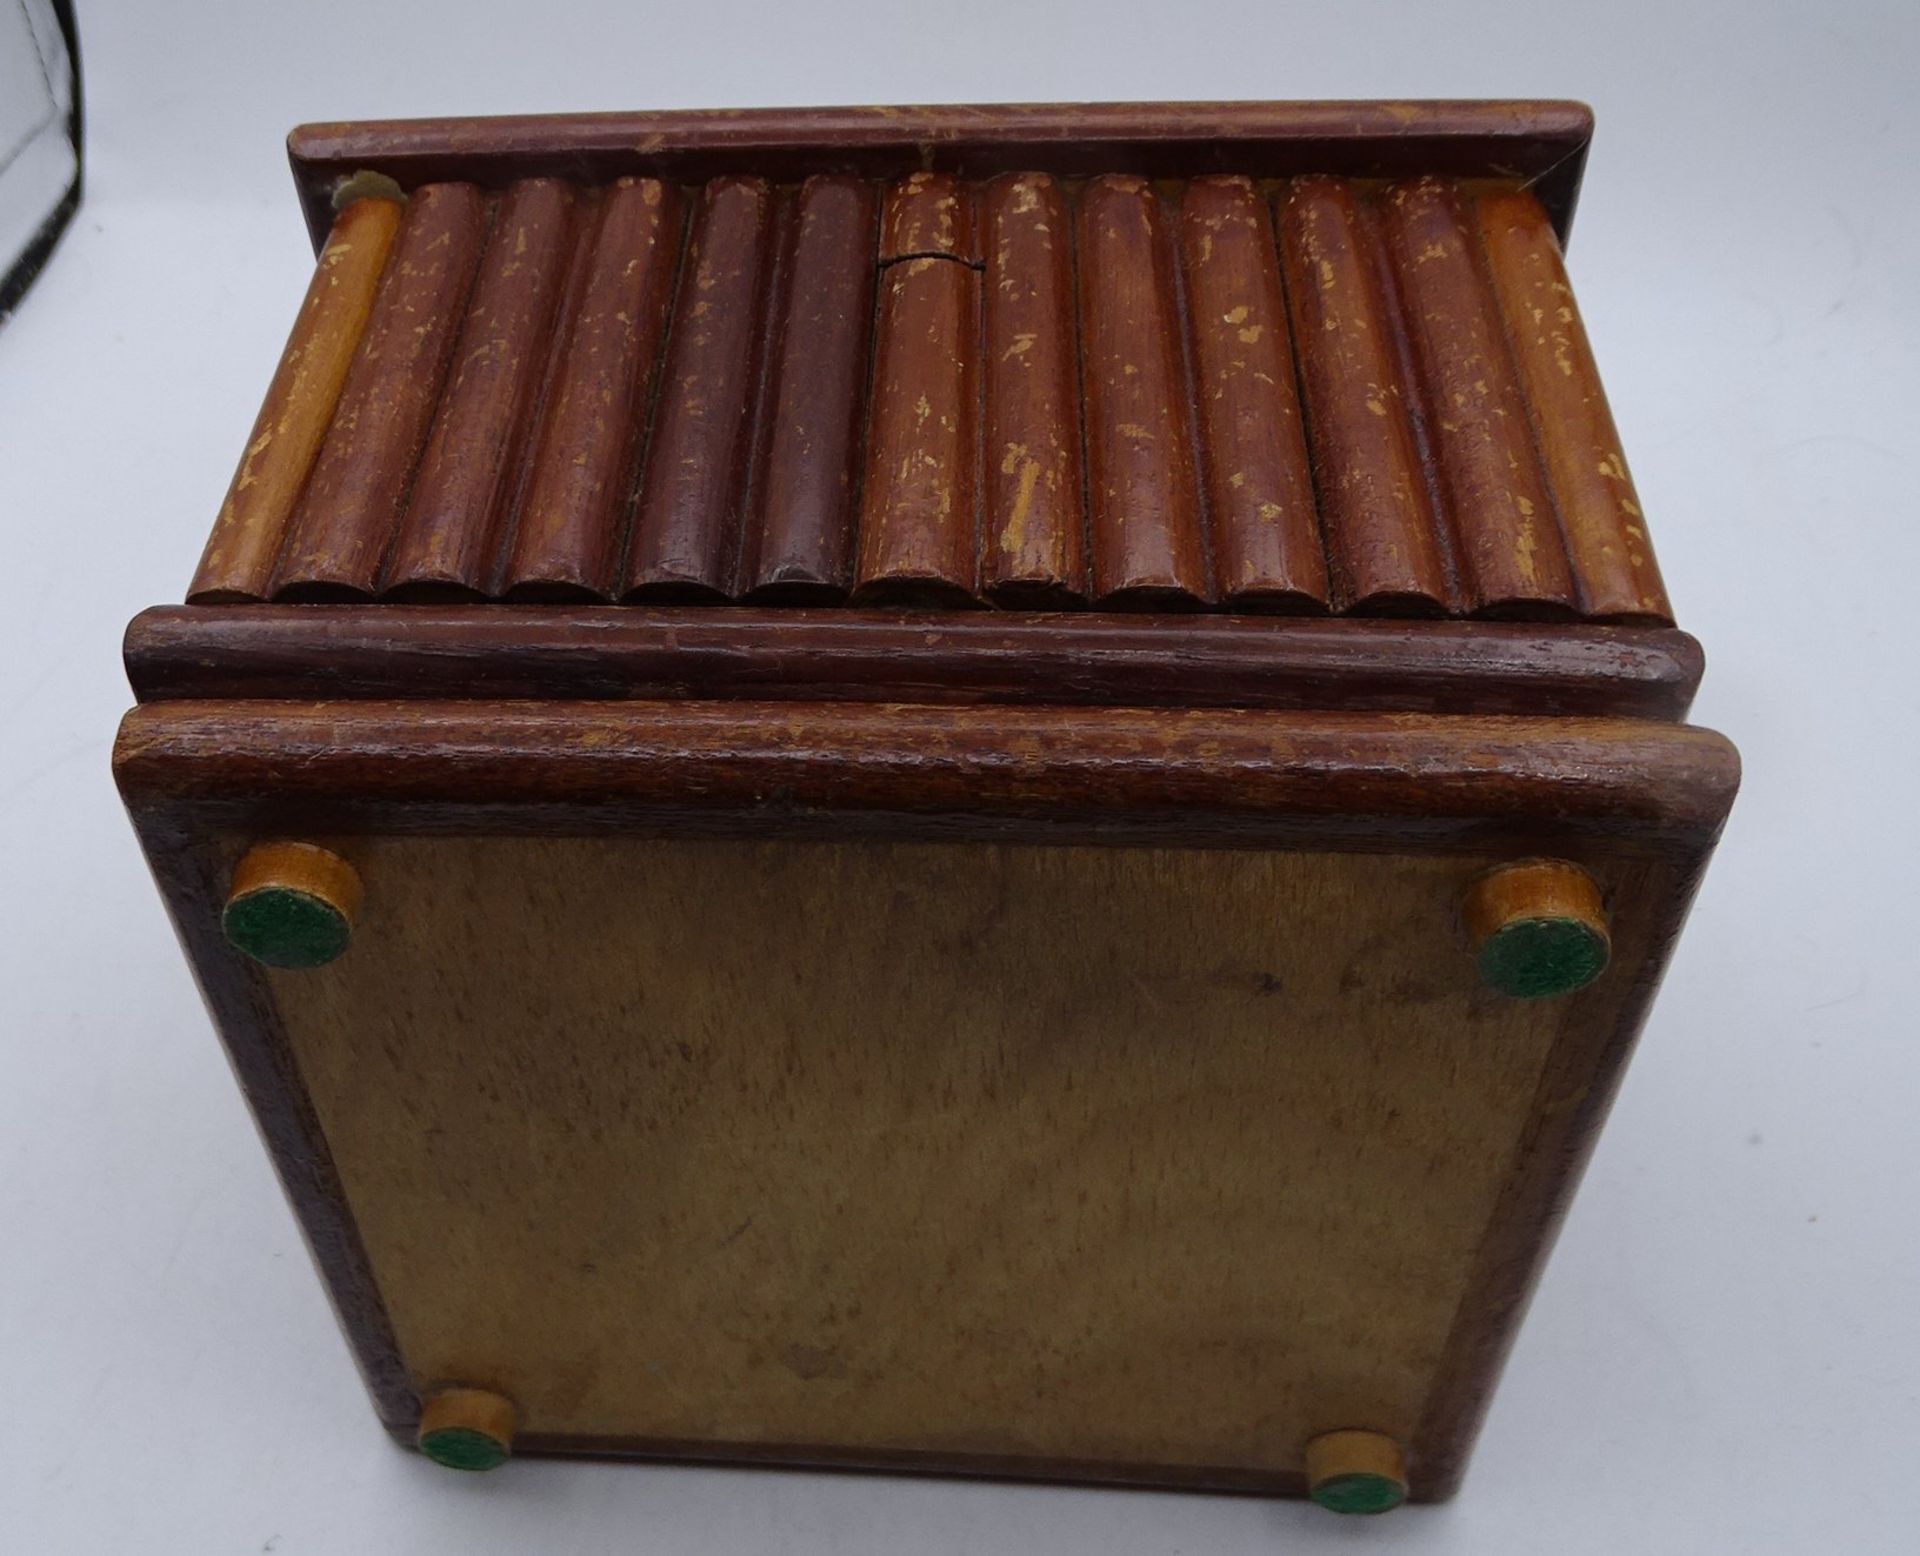 Holz-Schmuckkasten mit Einsatz, Gebrauchsspuren, H-10 cm, 14x14 cm - Image 4 of 4